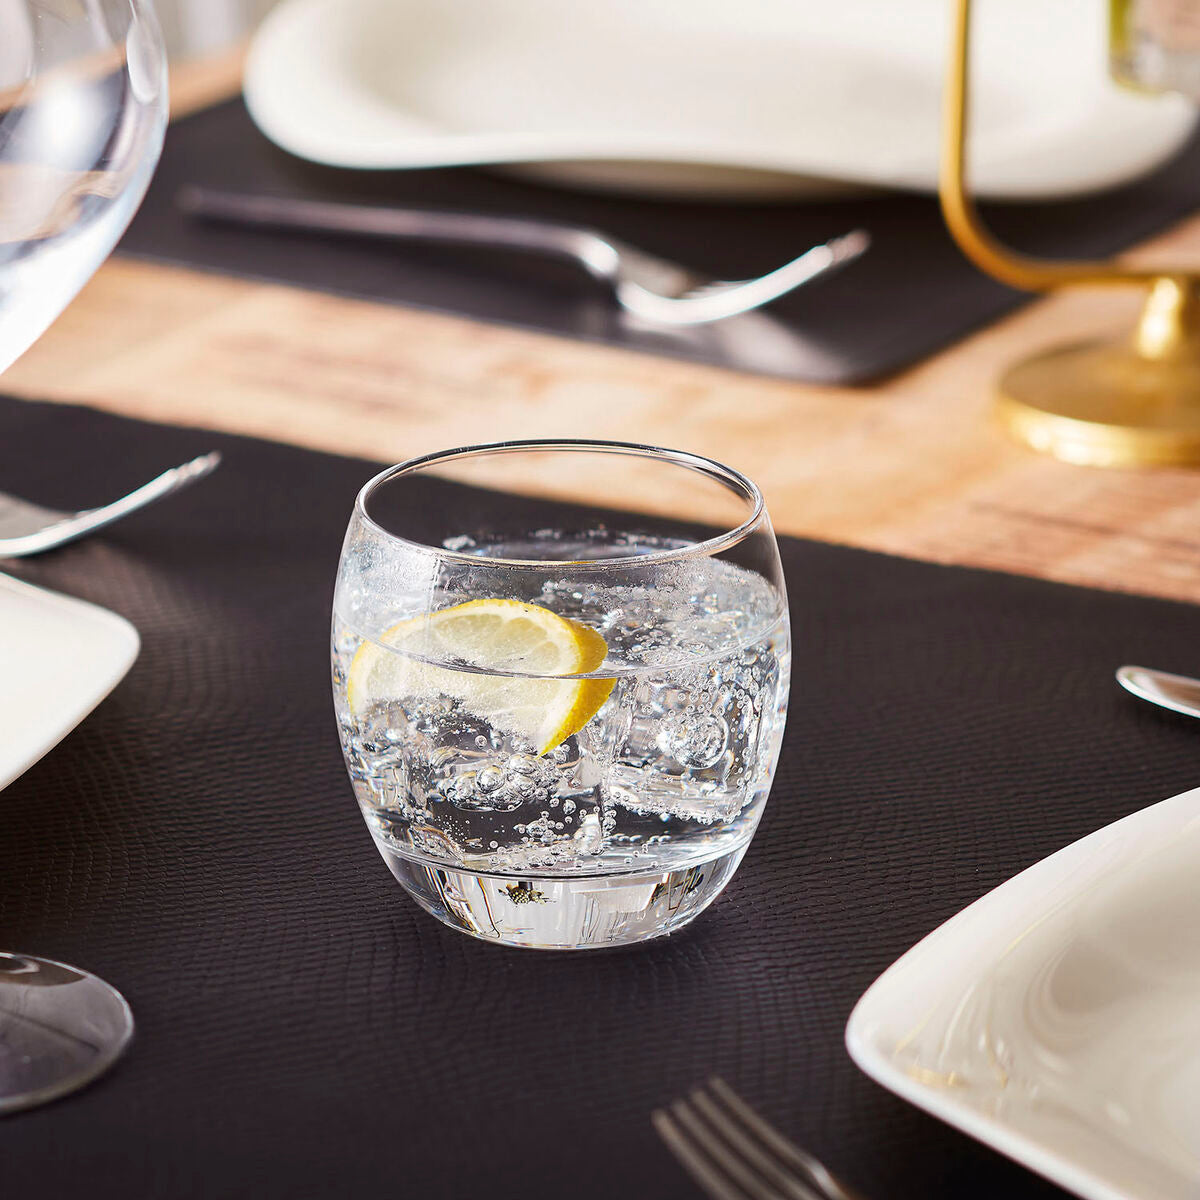 Trinkglas Luminarc Salto Durchsichtig Glas 320 ml (24 Stück)-Haus & Küche, Besteck, Geschirr und Glaswaren-Luminarc-Ciniskitchen